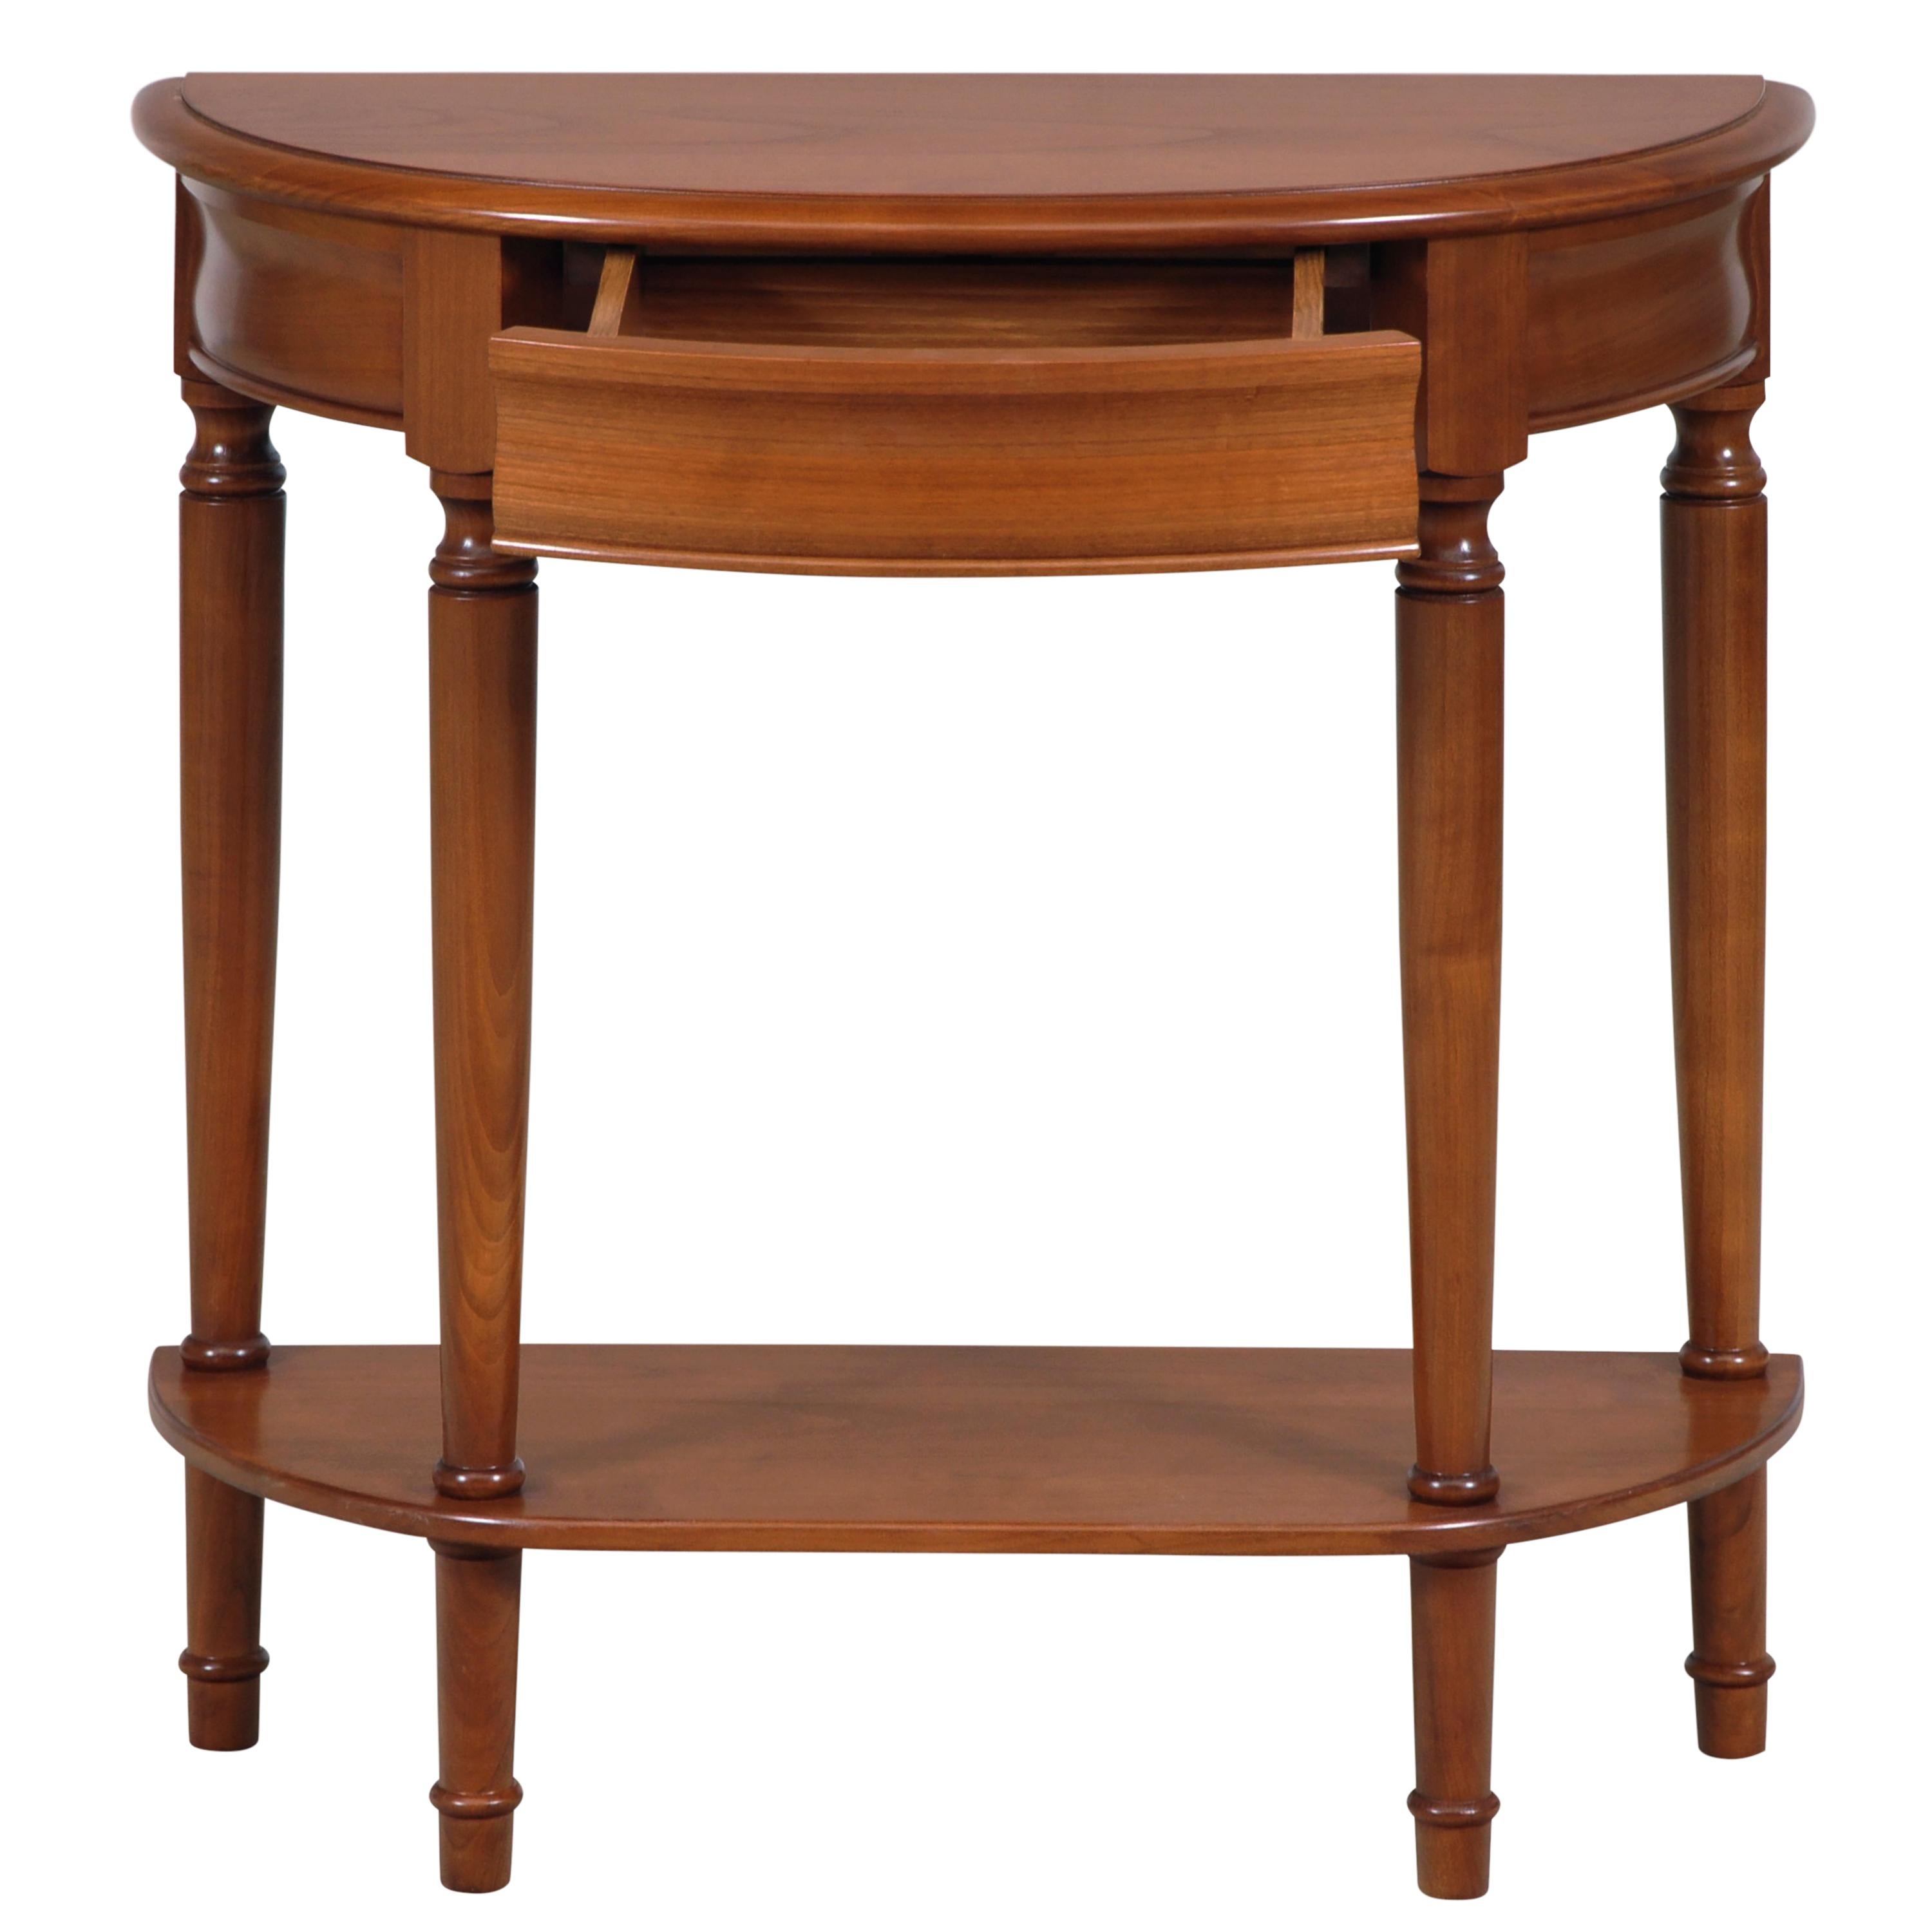 Cette table console en demi-lune est une reproduction faite à la main du style français Louis Philippe du milieu du XIXe siècle en France, caractérisé par ses moulures courbes, ses pieds courbés à la main et son design arrondi.

1 Tiroir intégré